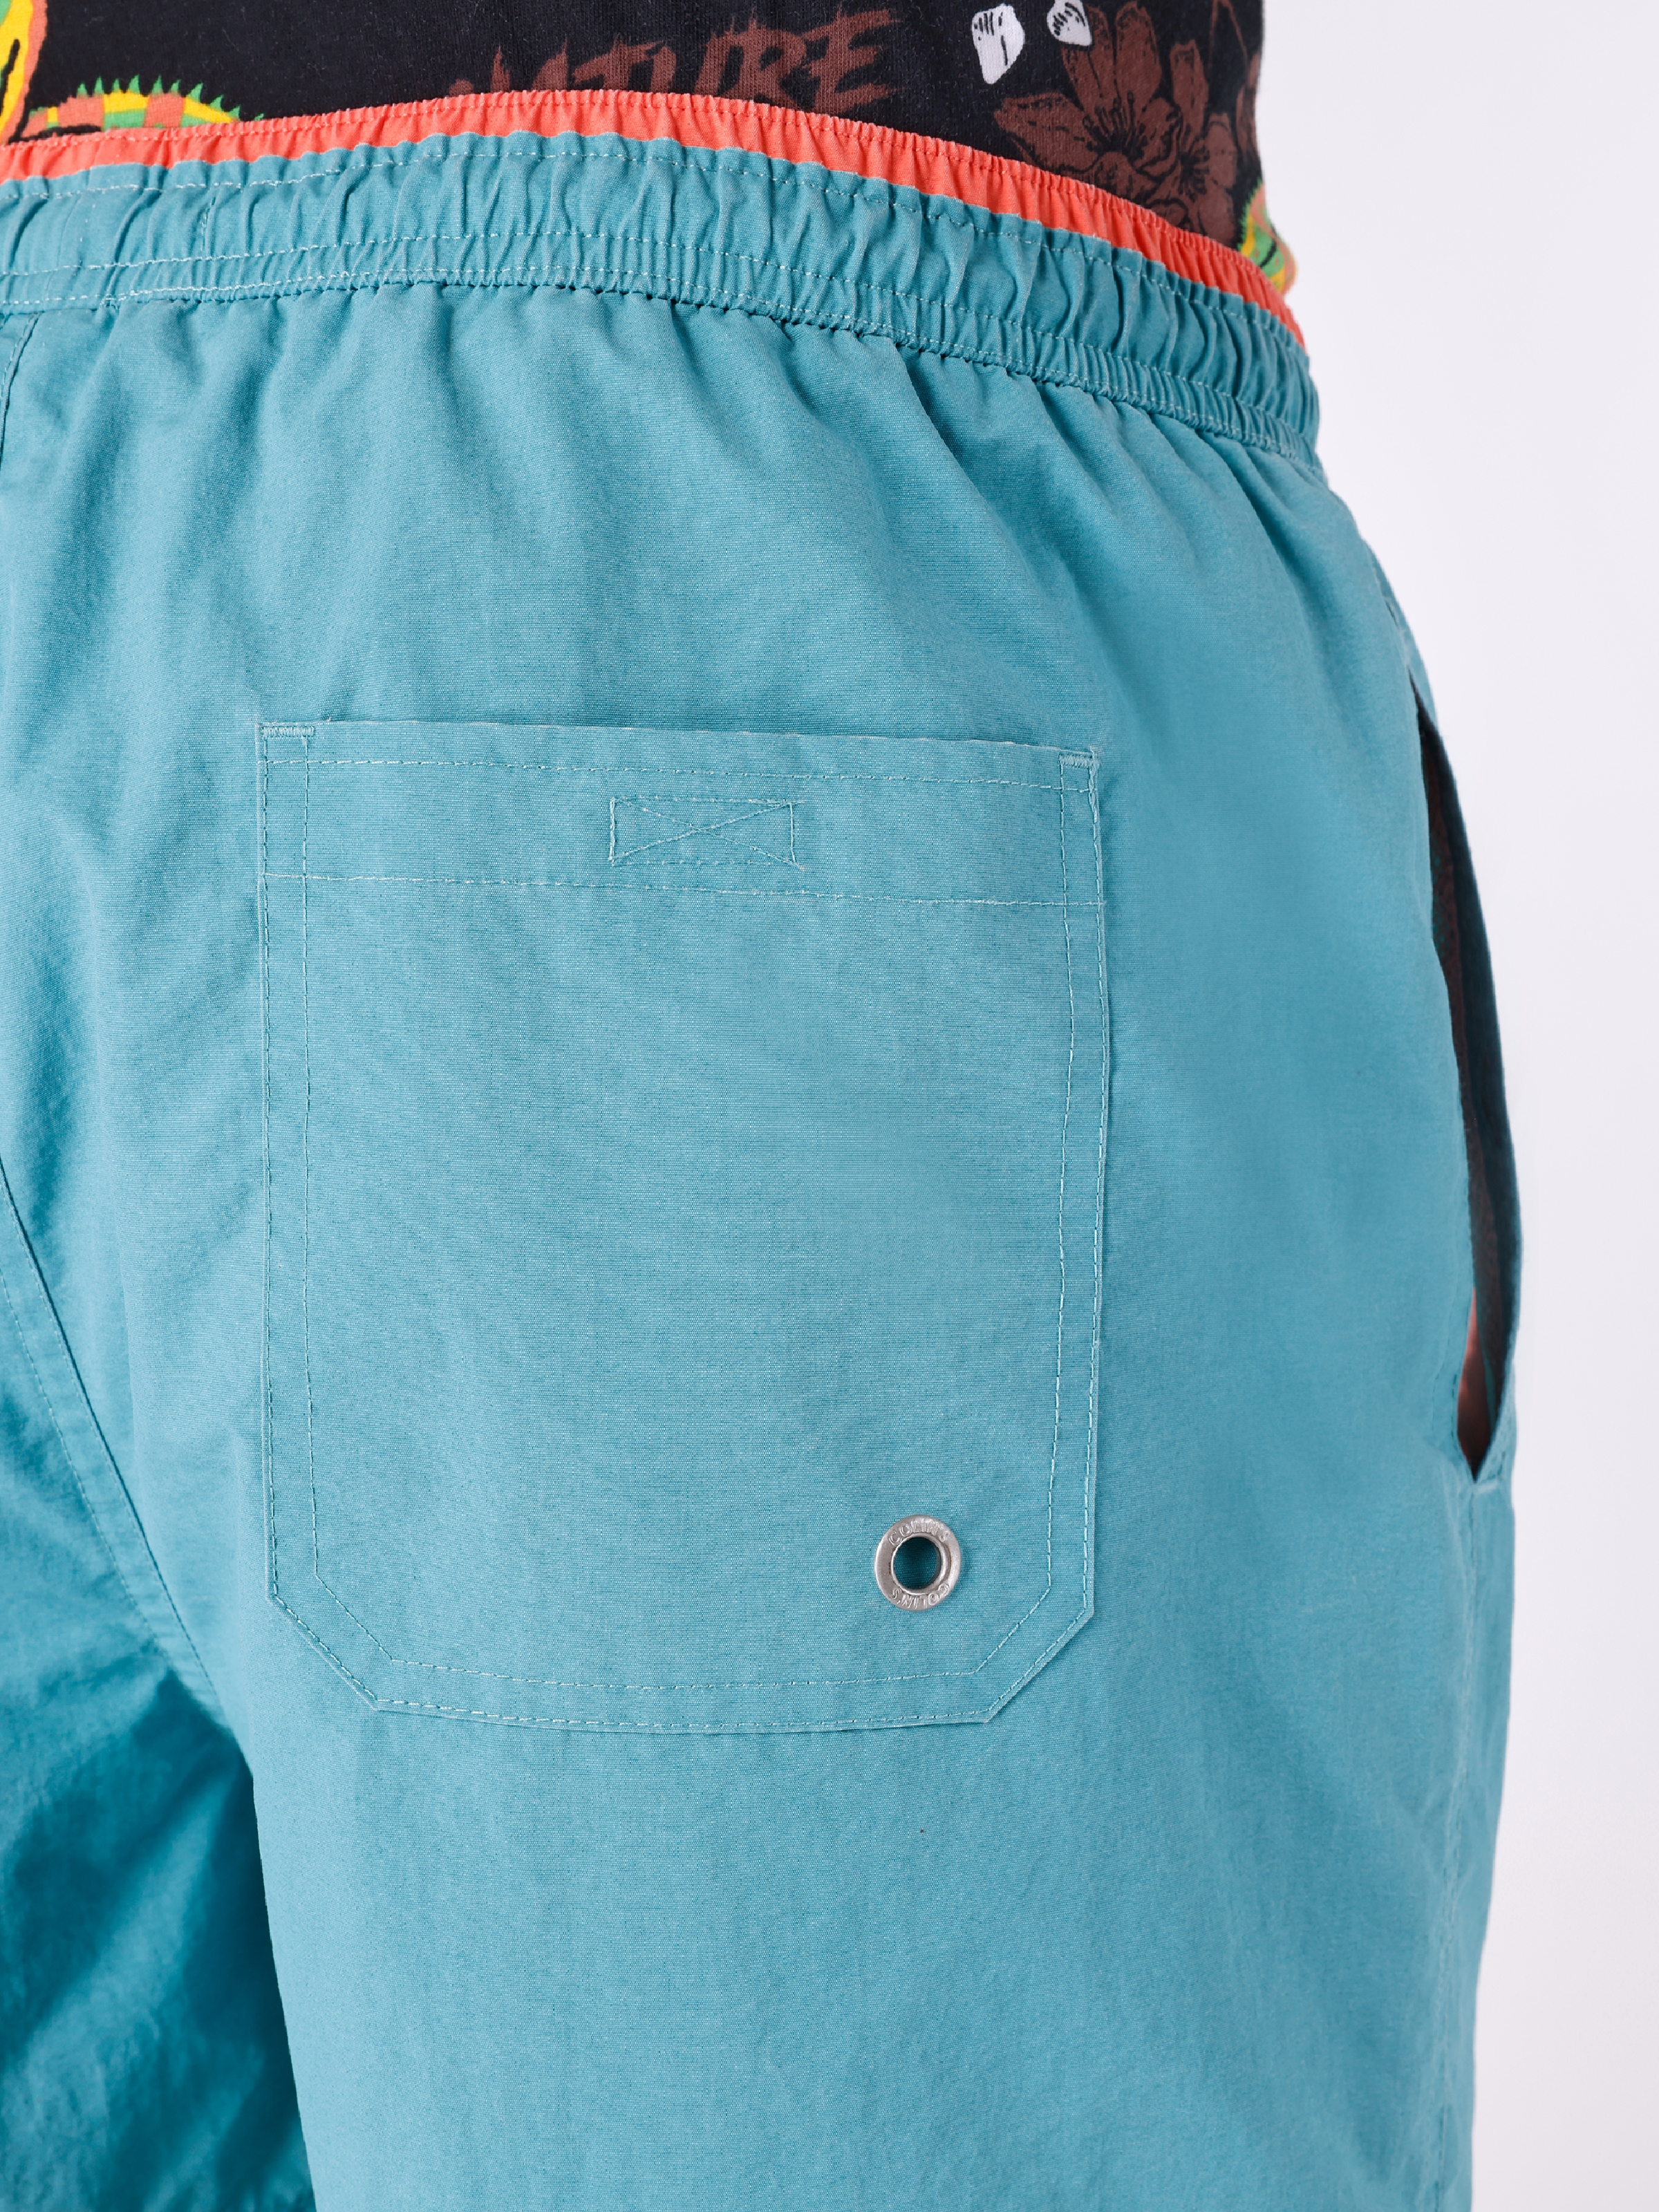 Afficher les détails de Short De Bain Bleu Taille Moyenne Pour Homme, Coupe Slim